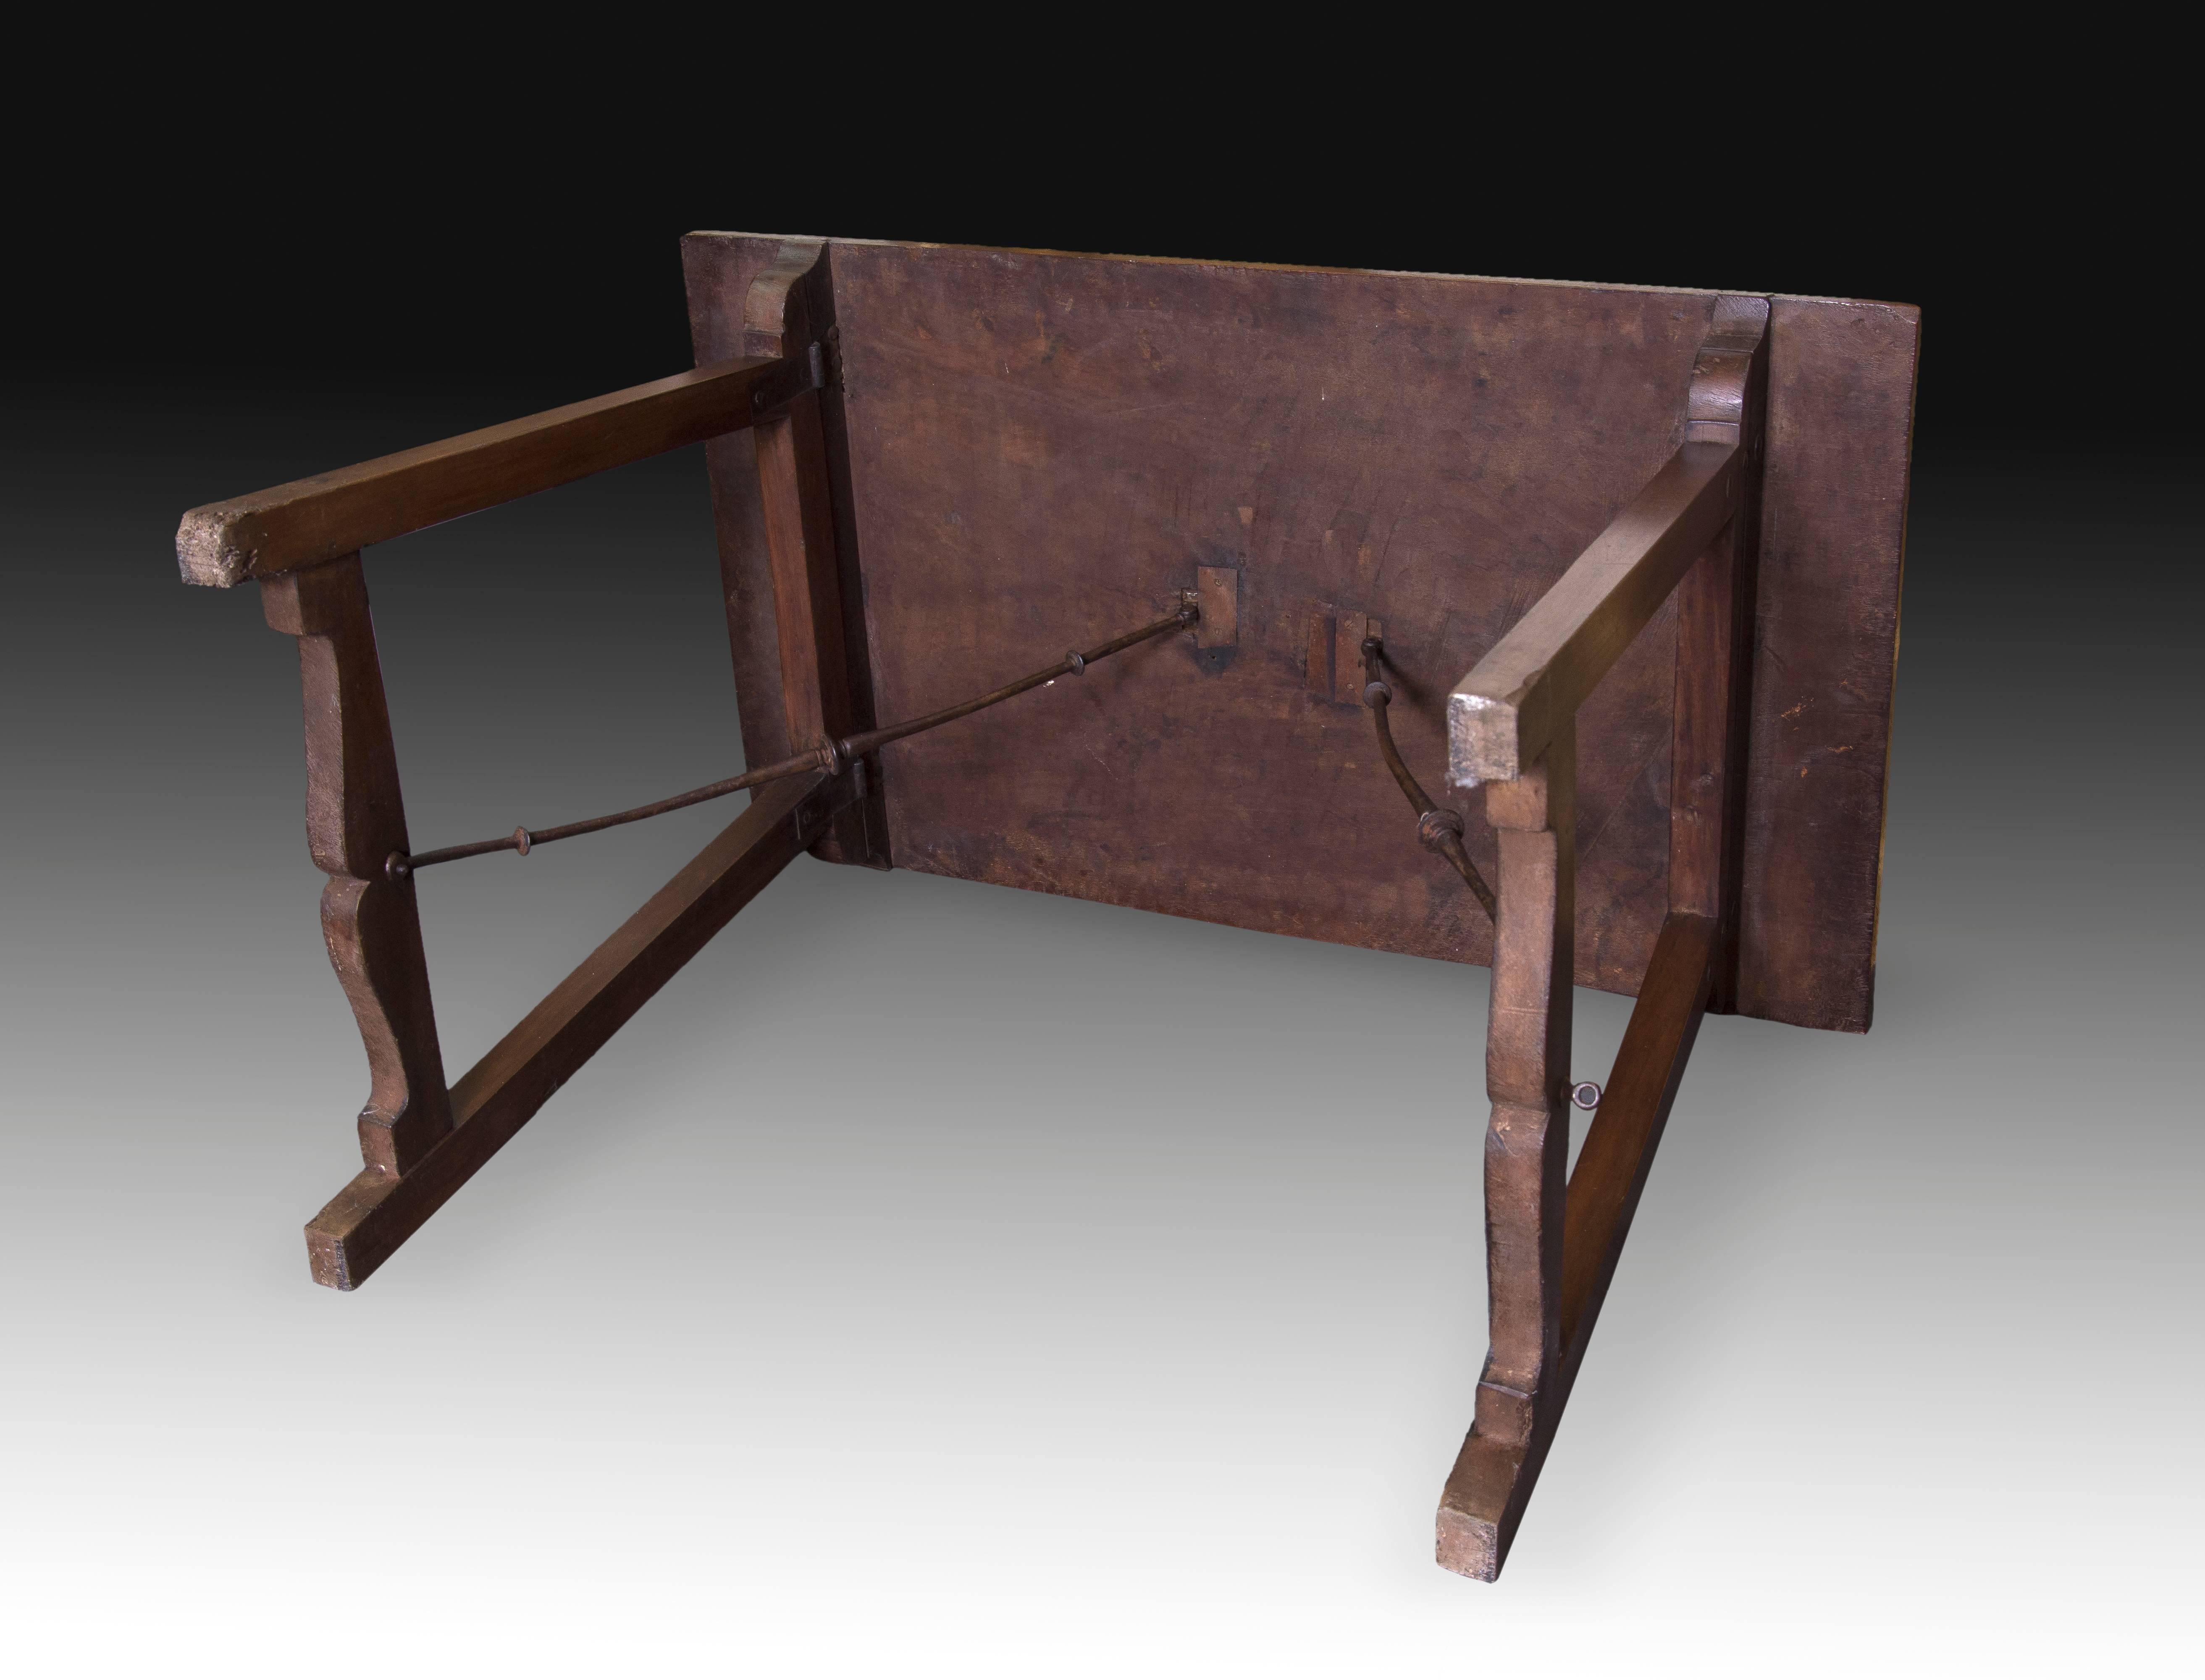 Table en noyer avec éléments en fer forgé, Espagne, XVIIe siècle.
Table en noyer avec plateau rectangulaire qui possède deux pieds de forme très particulière appelée 